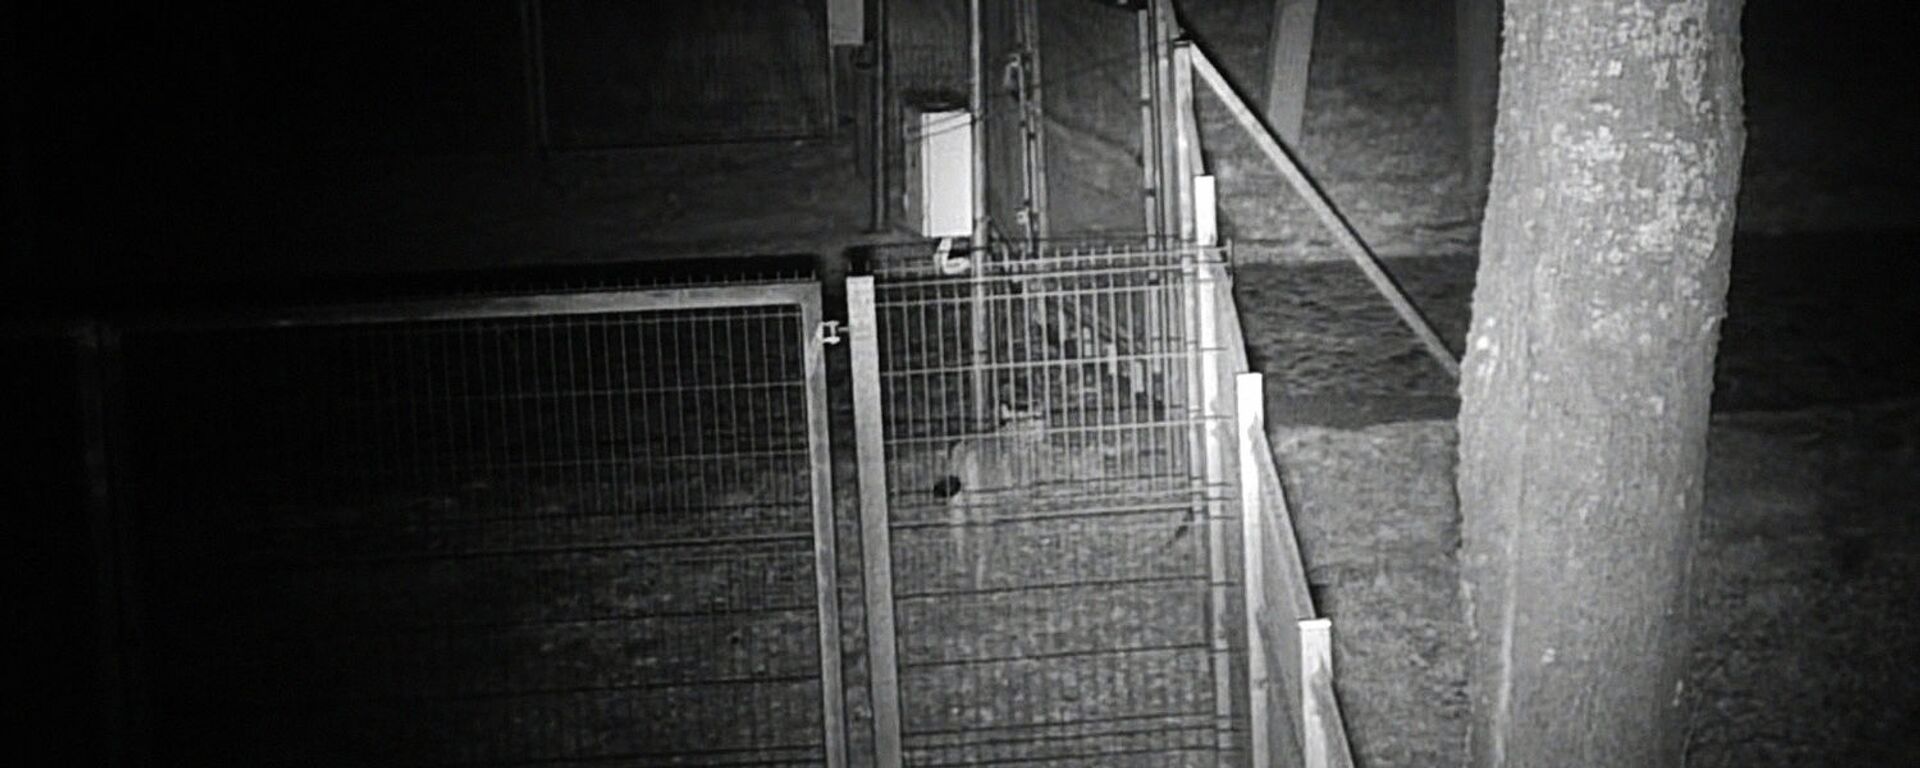 Животные попали в объектив камер возле контрольно-пропускного пункта Папялякис (сопредельный Лынтупы)   - Sputnik Latvija, 1920, 15.04.2021